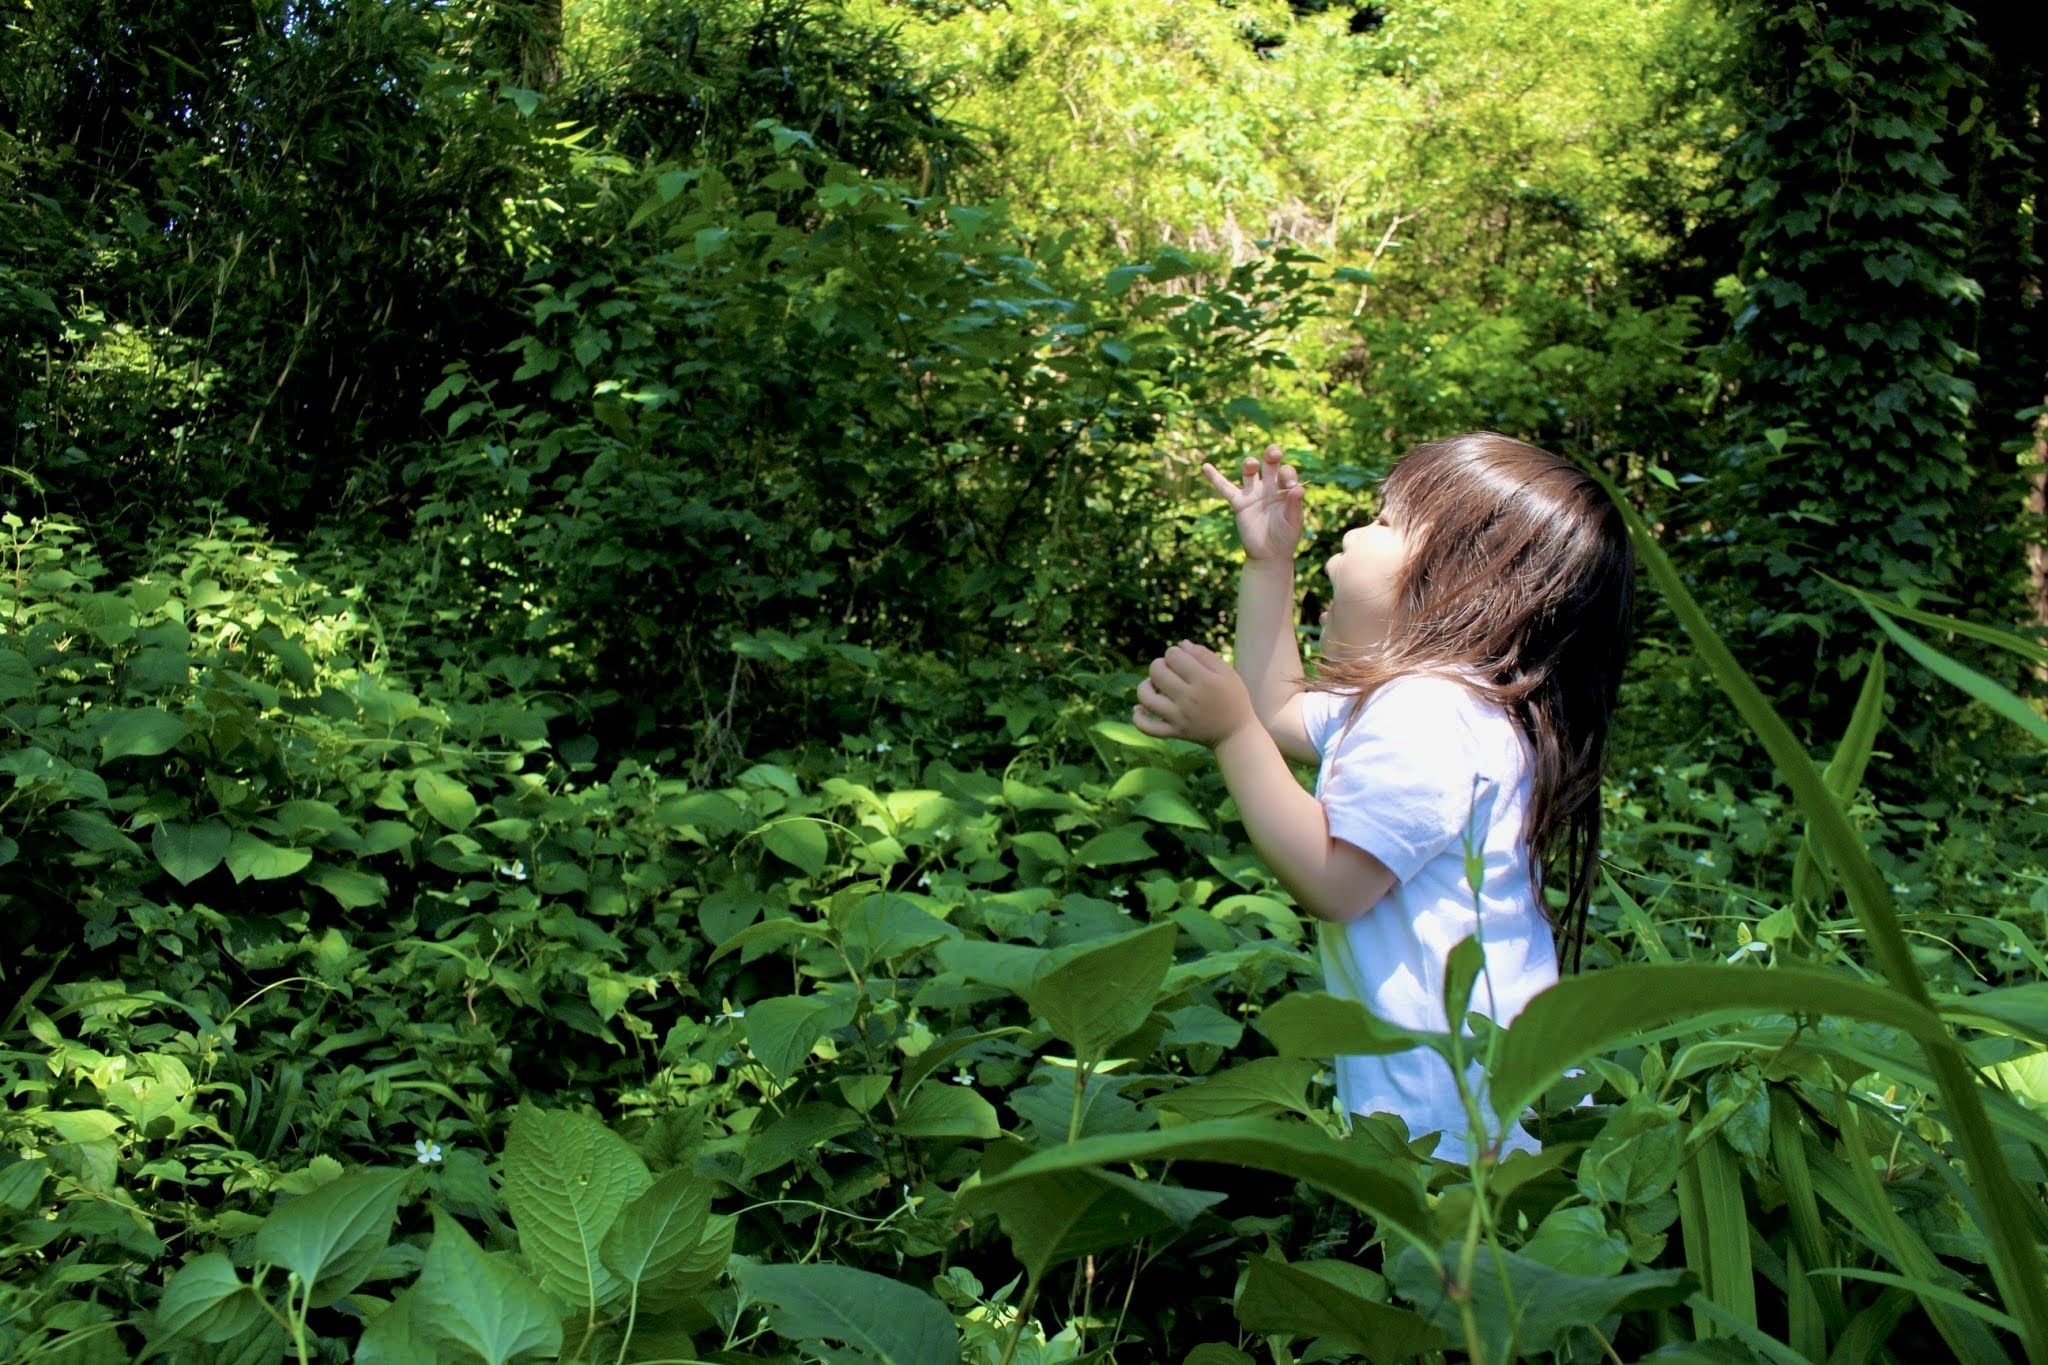 おかっぱミユキの3歳の娘が森の中で活き活きと遊んでいる写真。タイトルは「森の指揮者」撮影者はおかっぱミユキ。